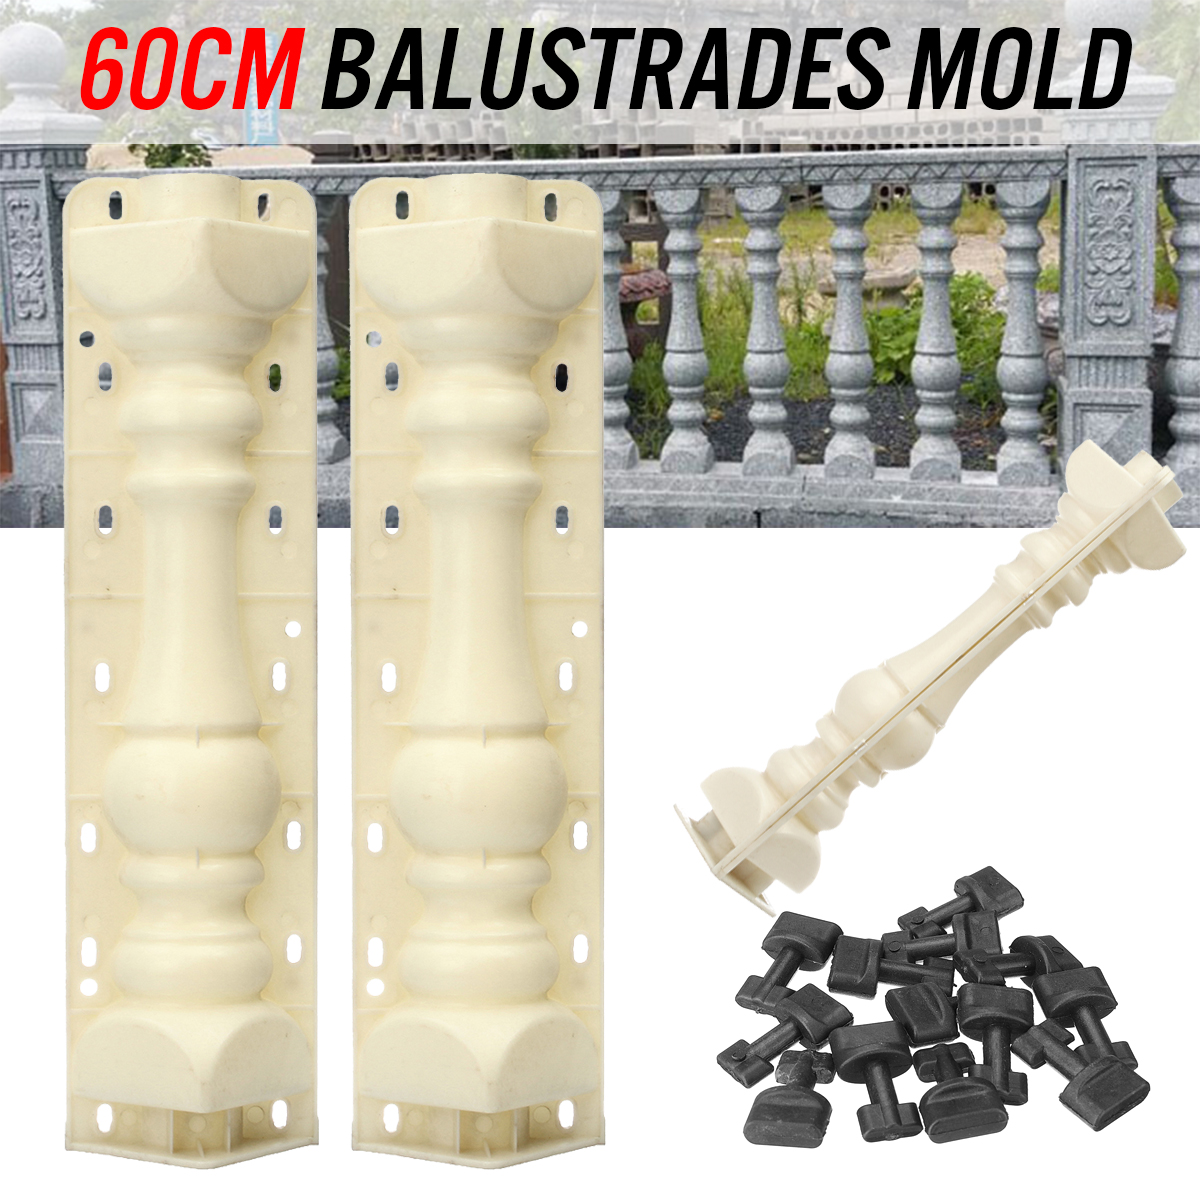 2Pcs-60cm-Balustrades-Molds-DIY-Mould-for-Concrete-Plaster-Cement-Garden-Decor-1395447-1